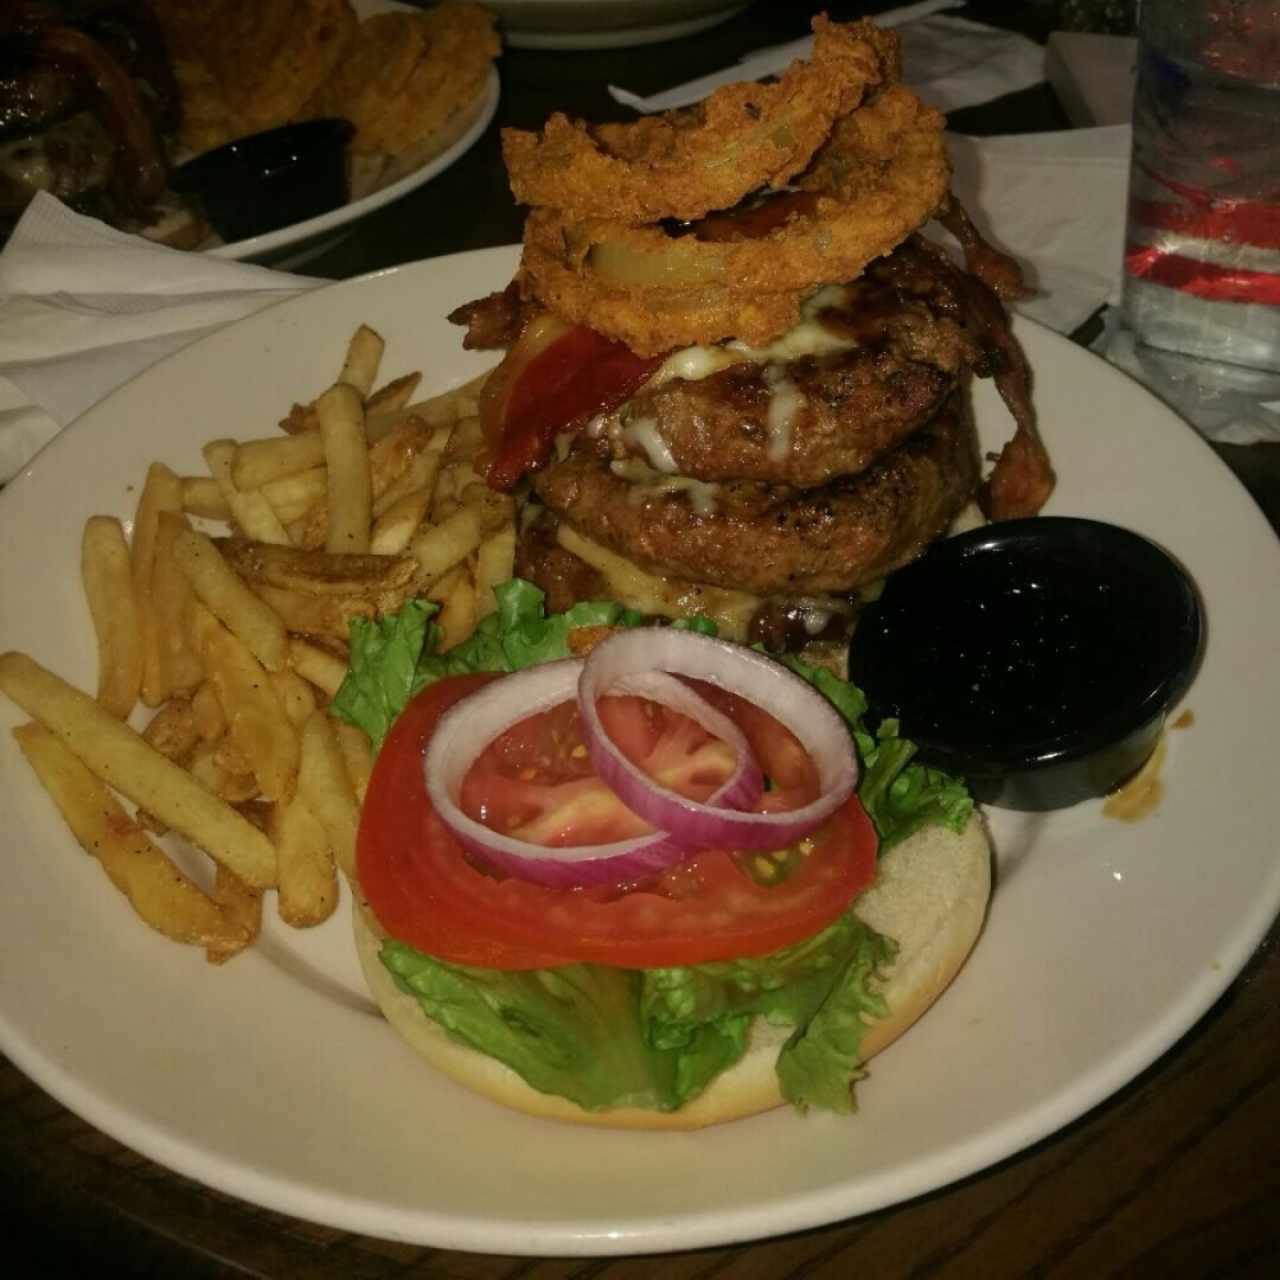 Ultimate Jack Daniel burger (triple)